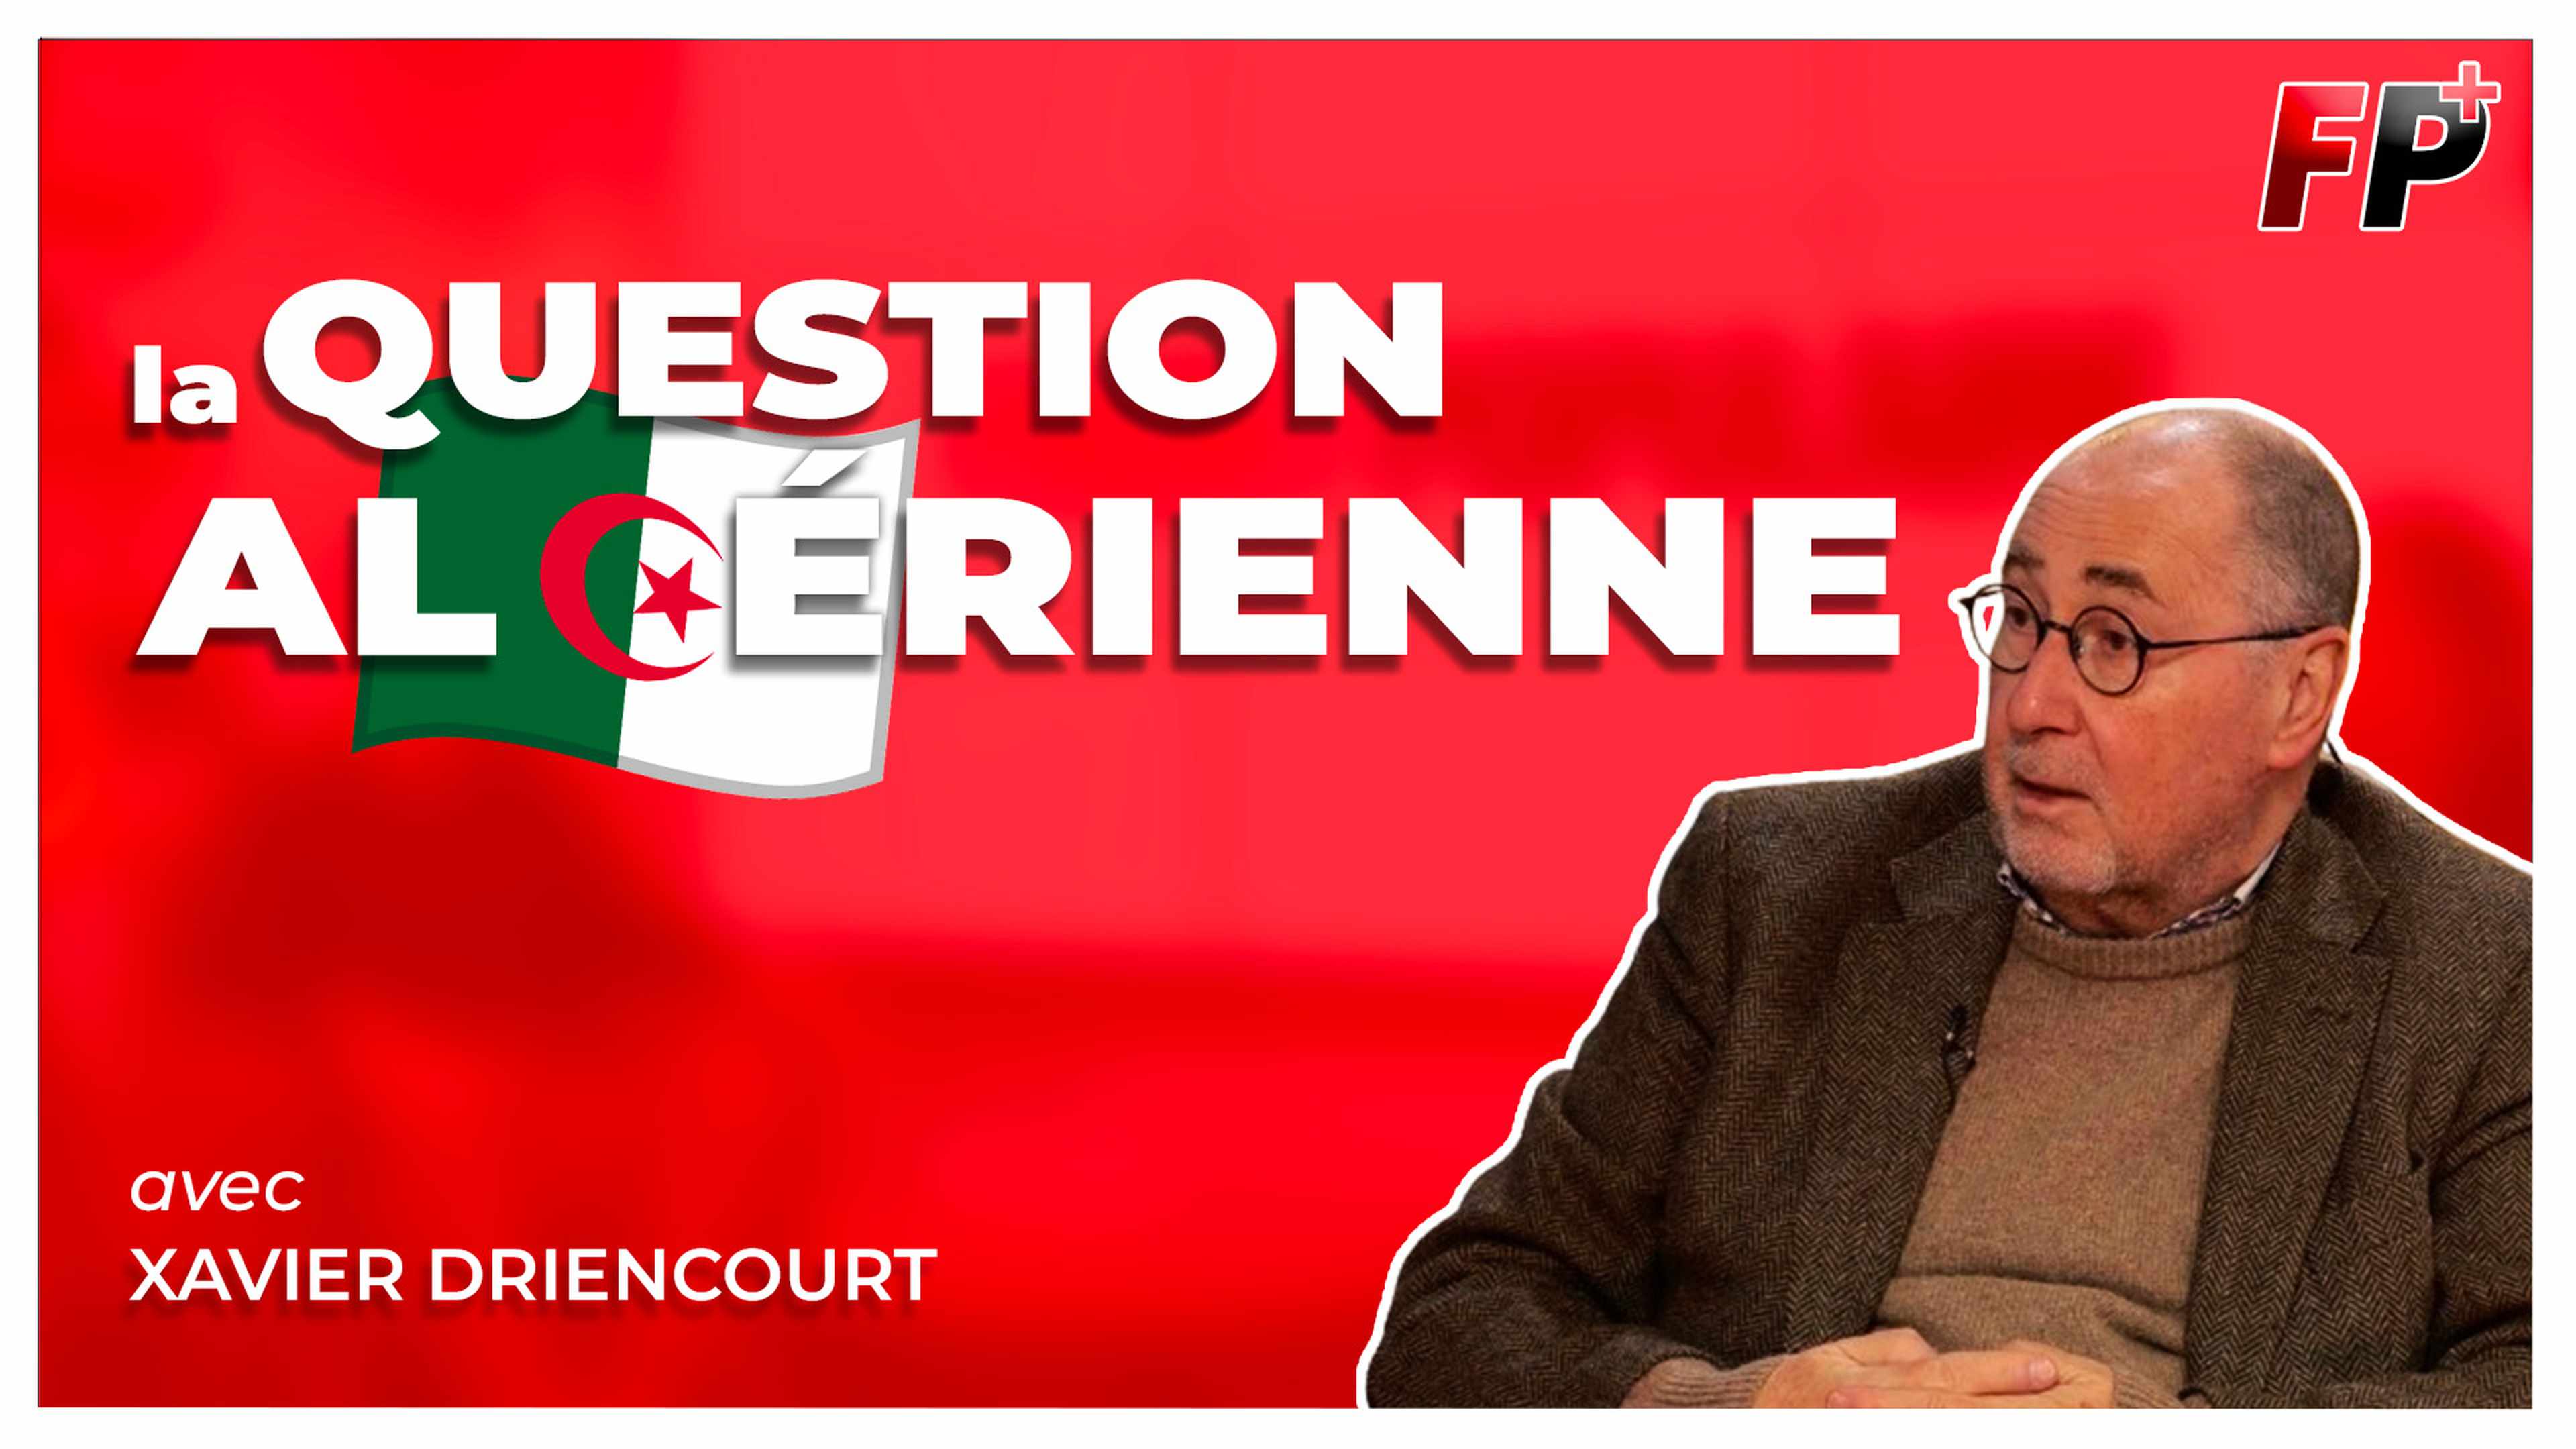 La question algérienne expliquée par Xavier Driencourt